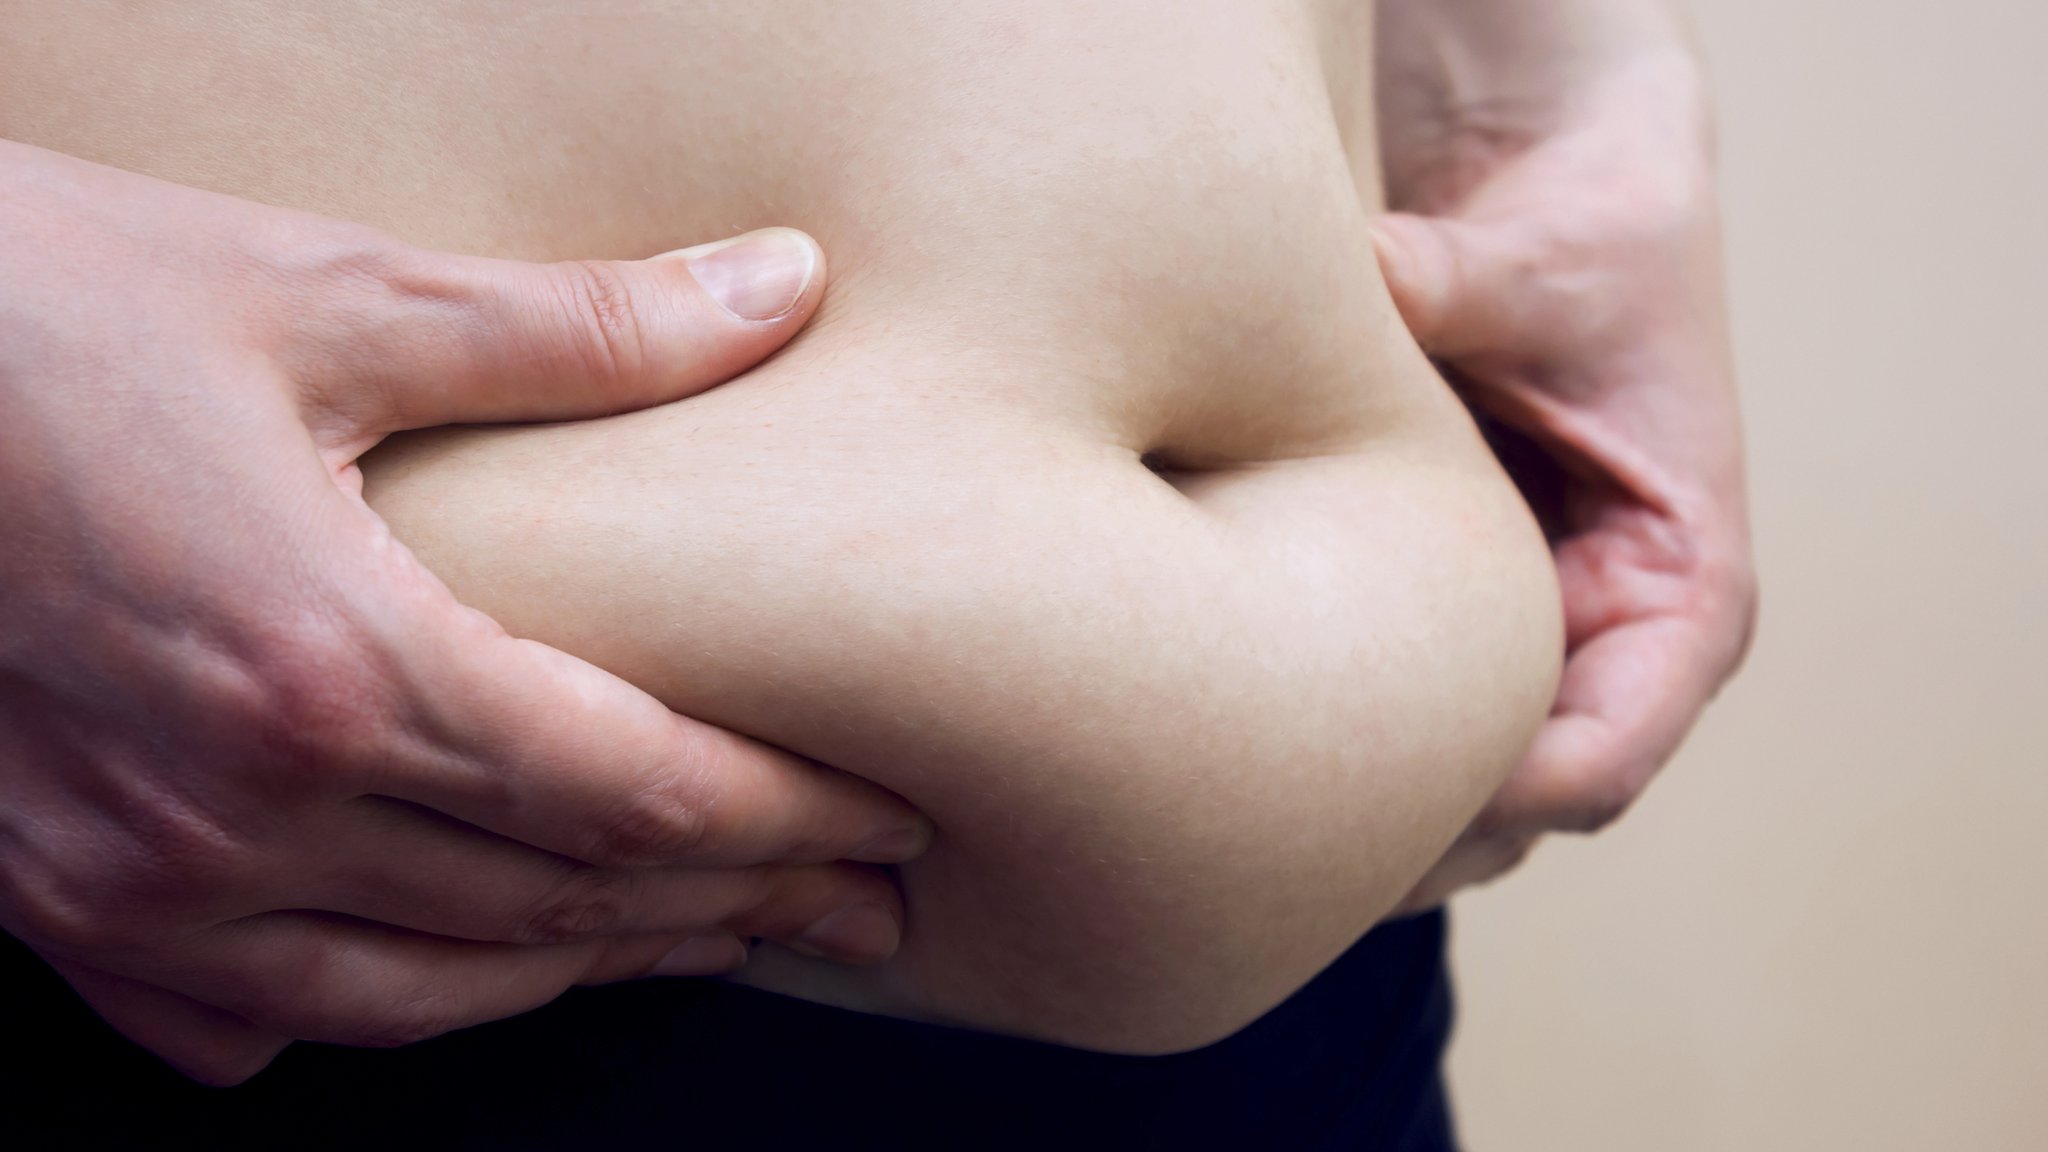 Ejercicios cortos que te ayudarán a perder grasa del bajo vientre